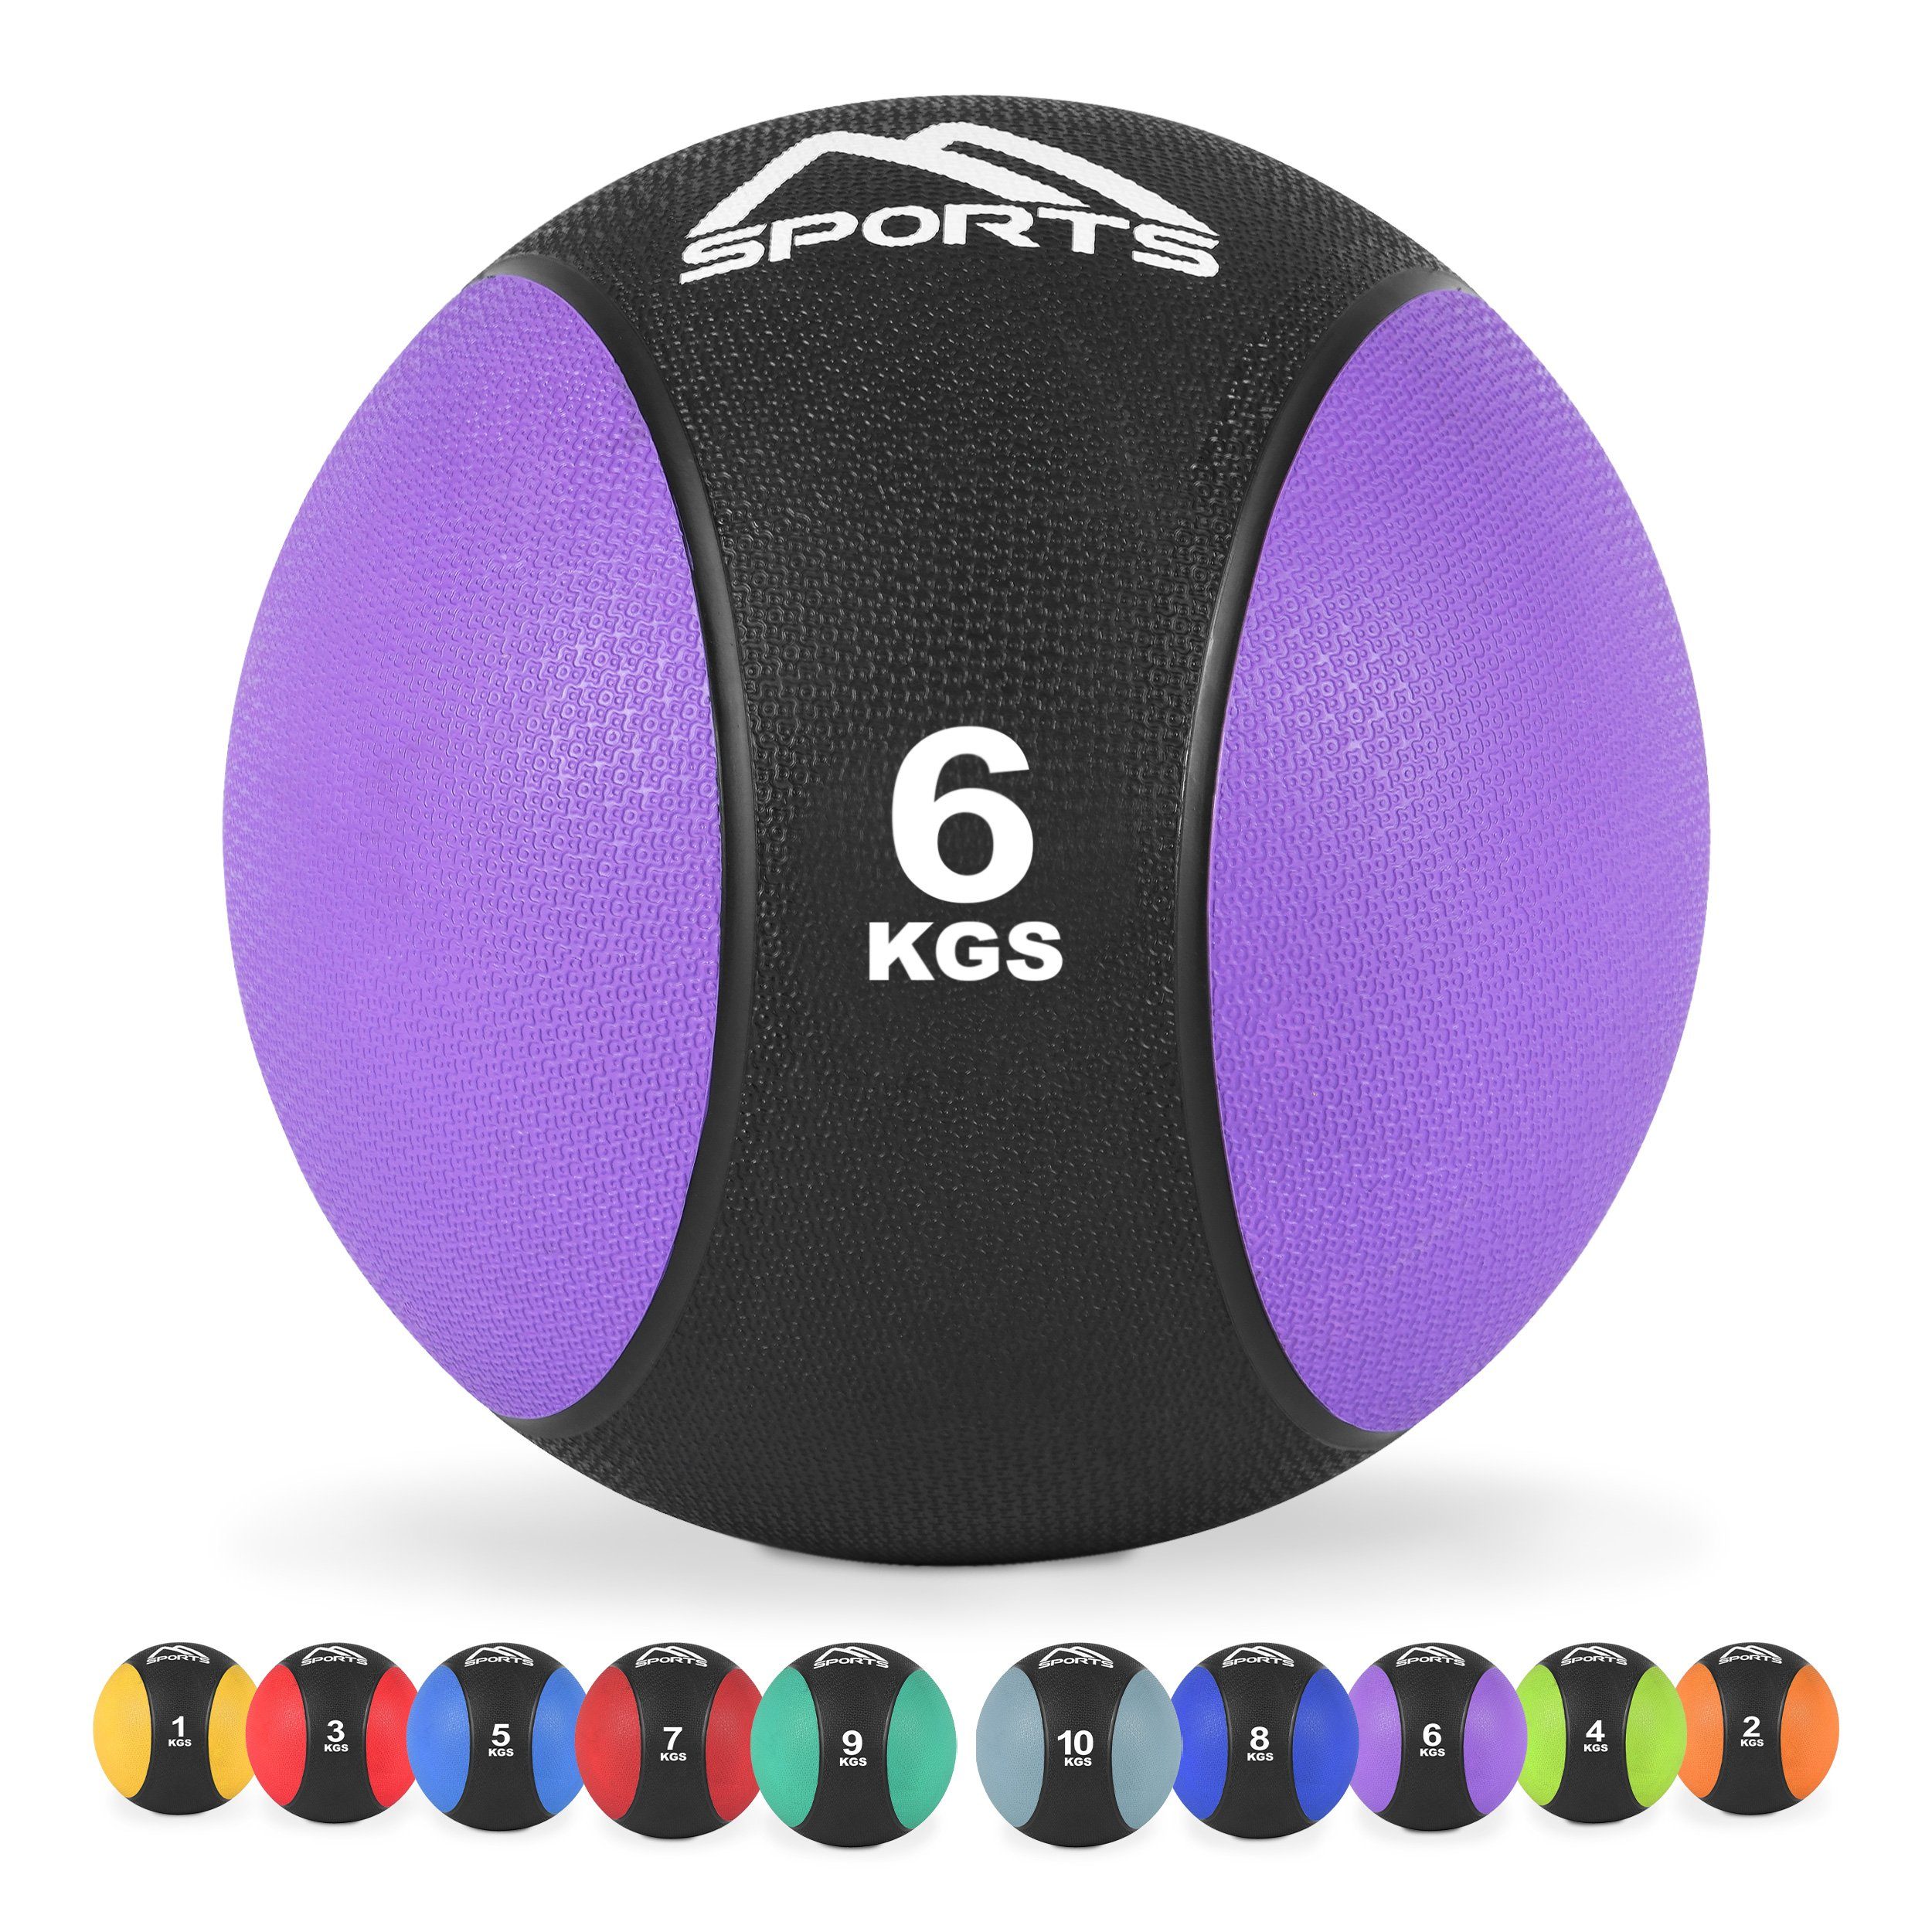 MSports® Medizinball Medizinball 1 – 10 kg – inkl. Übungsposter 6 kg - Lila